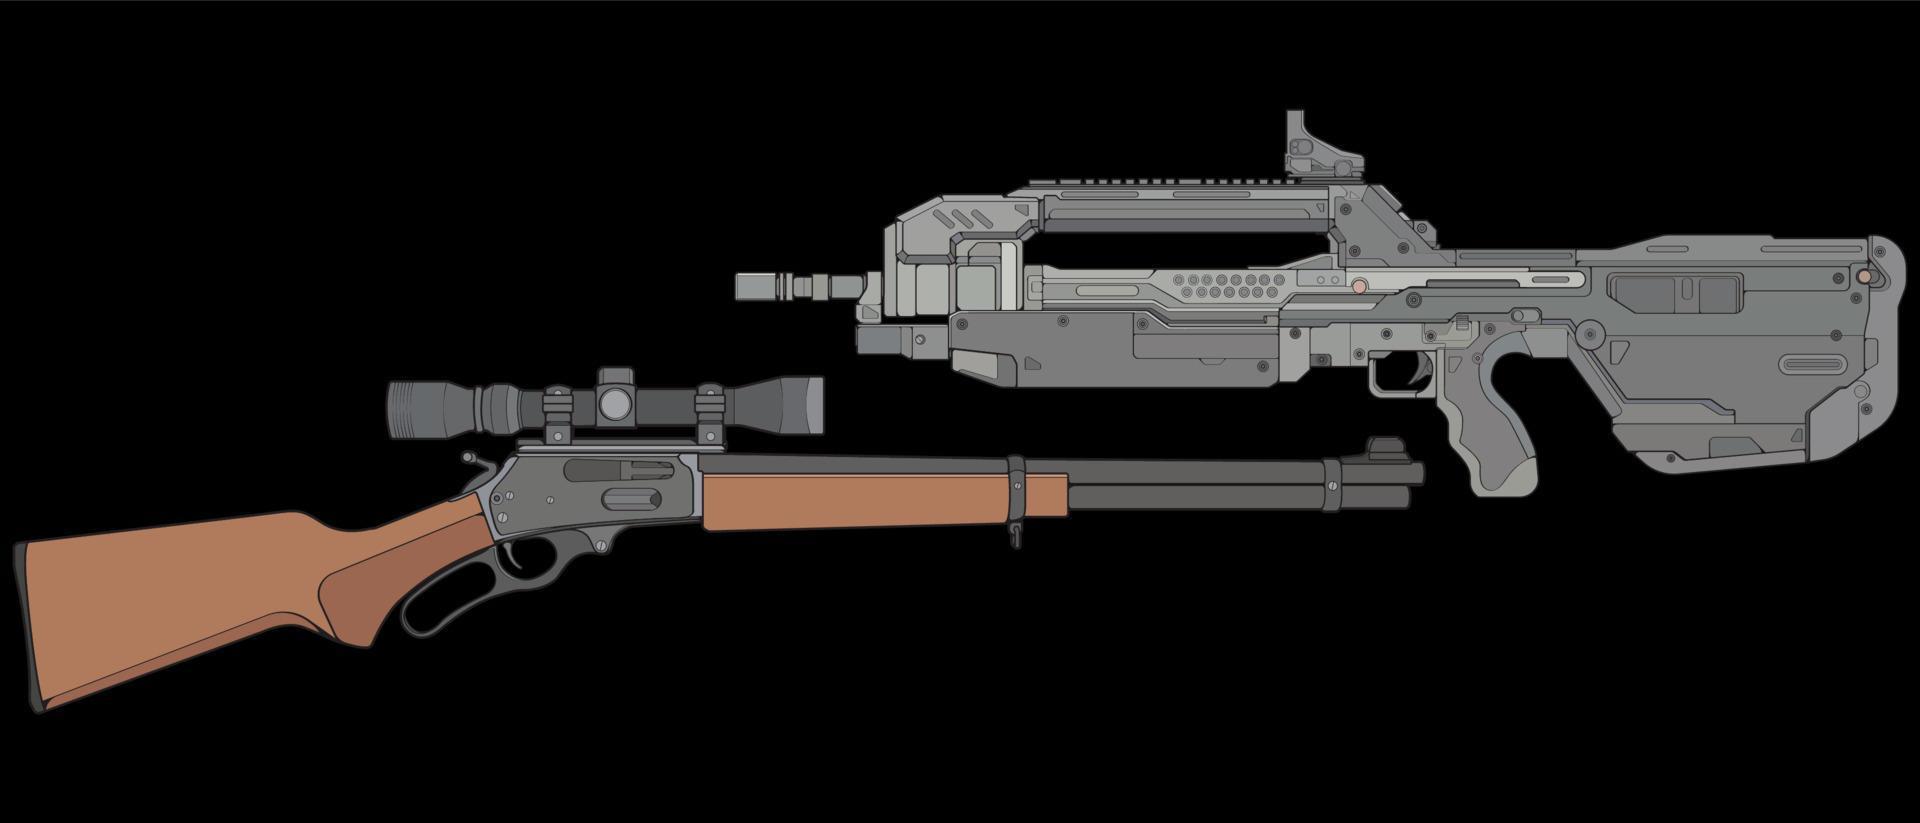 conjunto de armas de fuego de estilo vectorial, arma de fuego, ilustración de arma, línea vectorial, ilustración de arma, arma moderna, concepto militar, pistola para entrenamiento vector